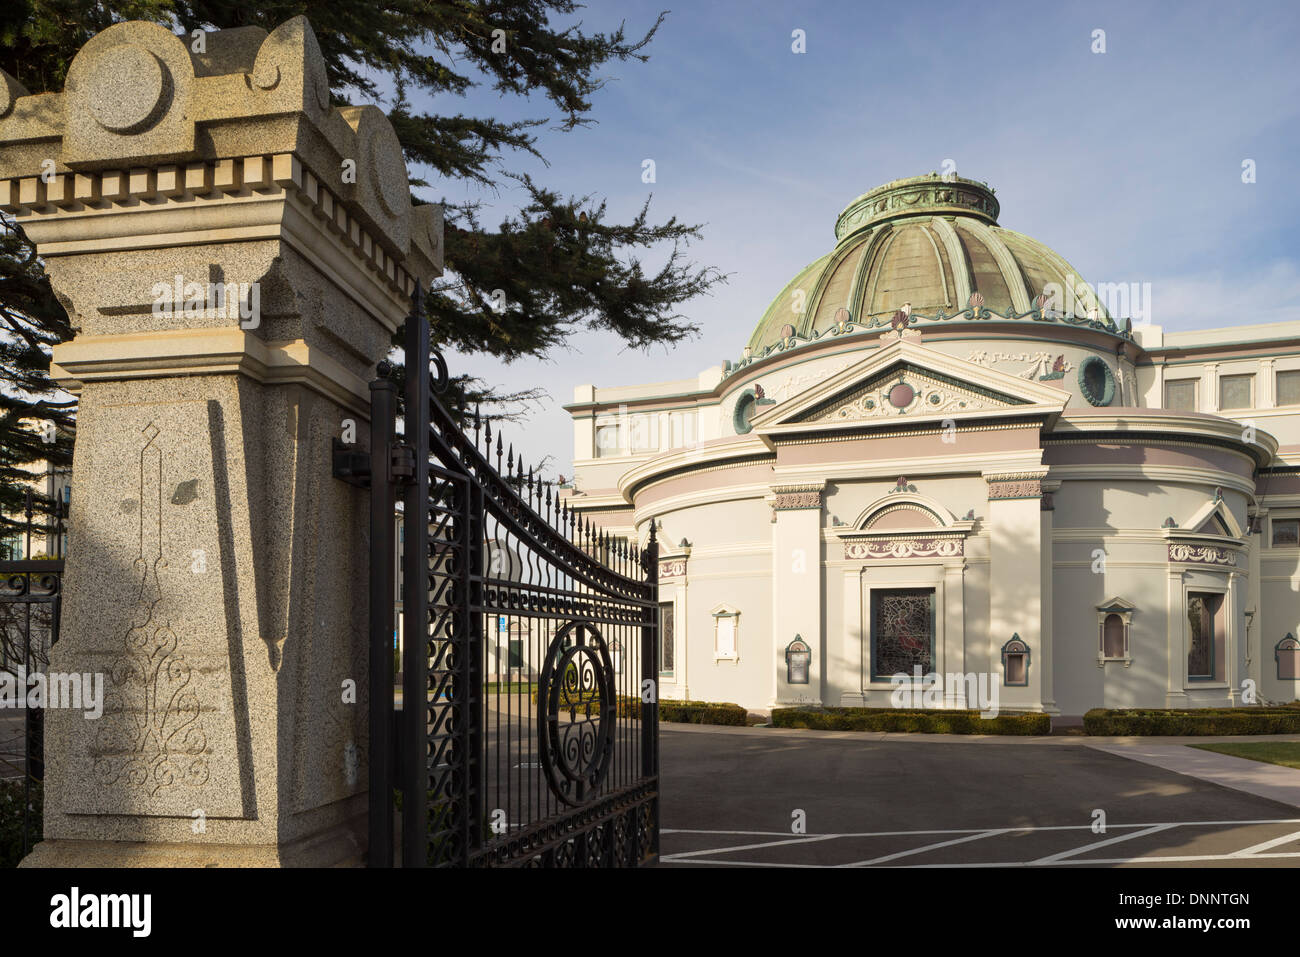 La société Neptune un Columbarium de San Francisco. Architecte : Bernard J.S. Cahill. Banque D'Images